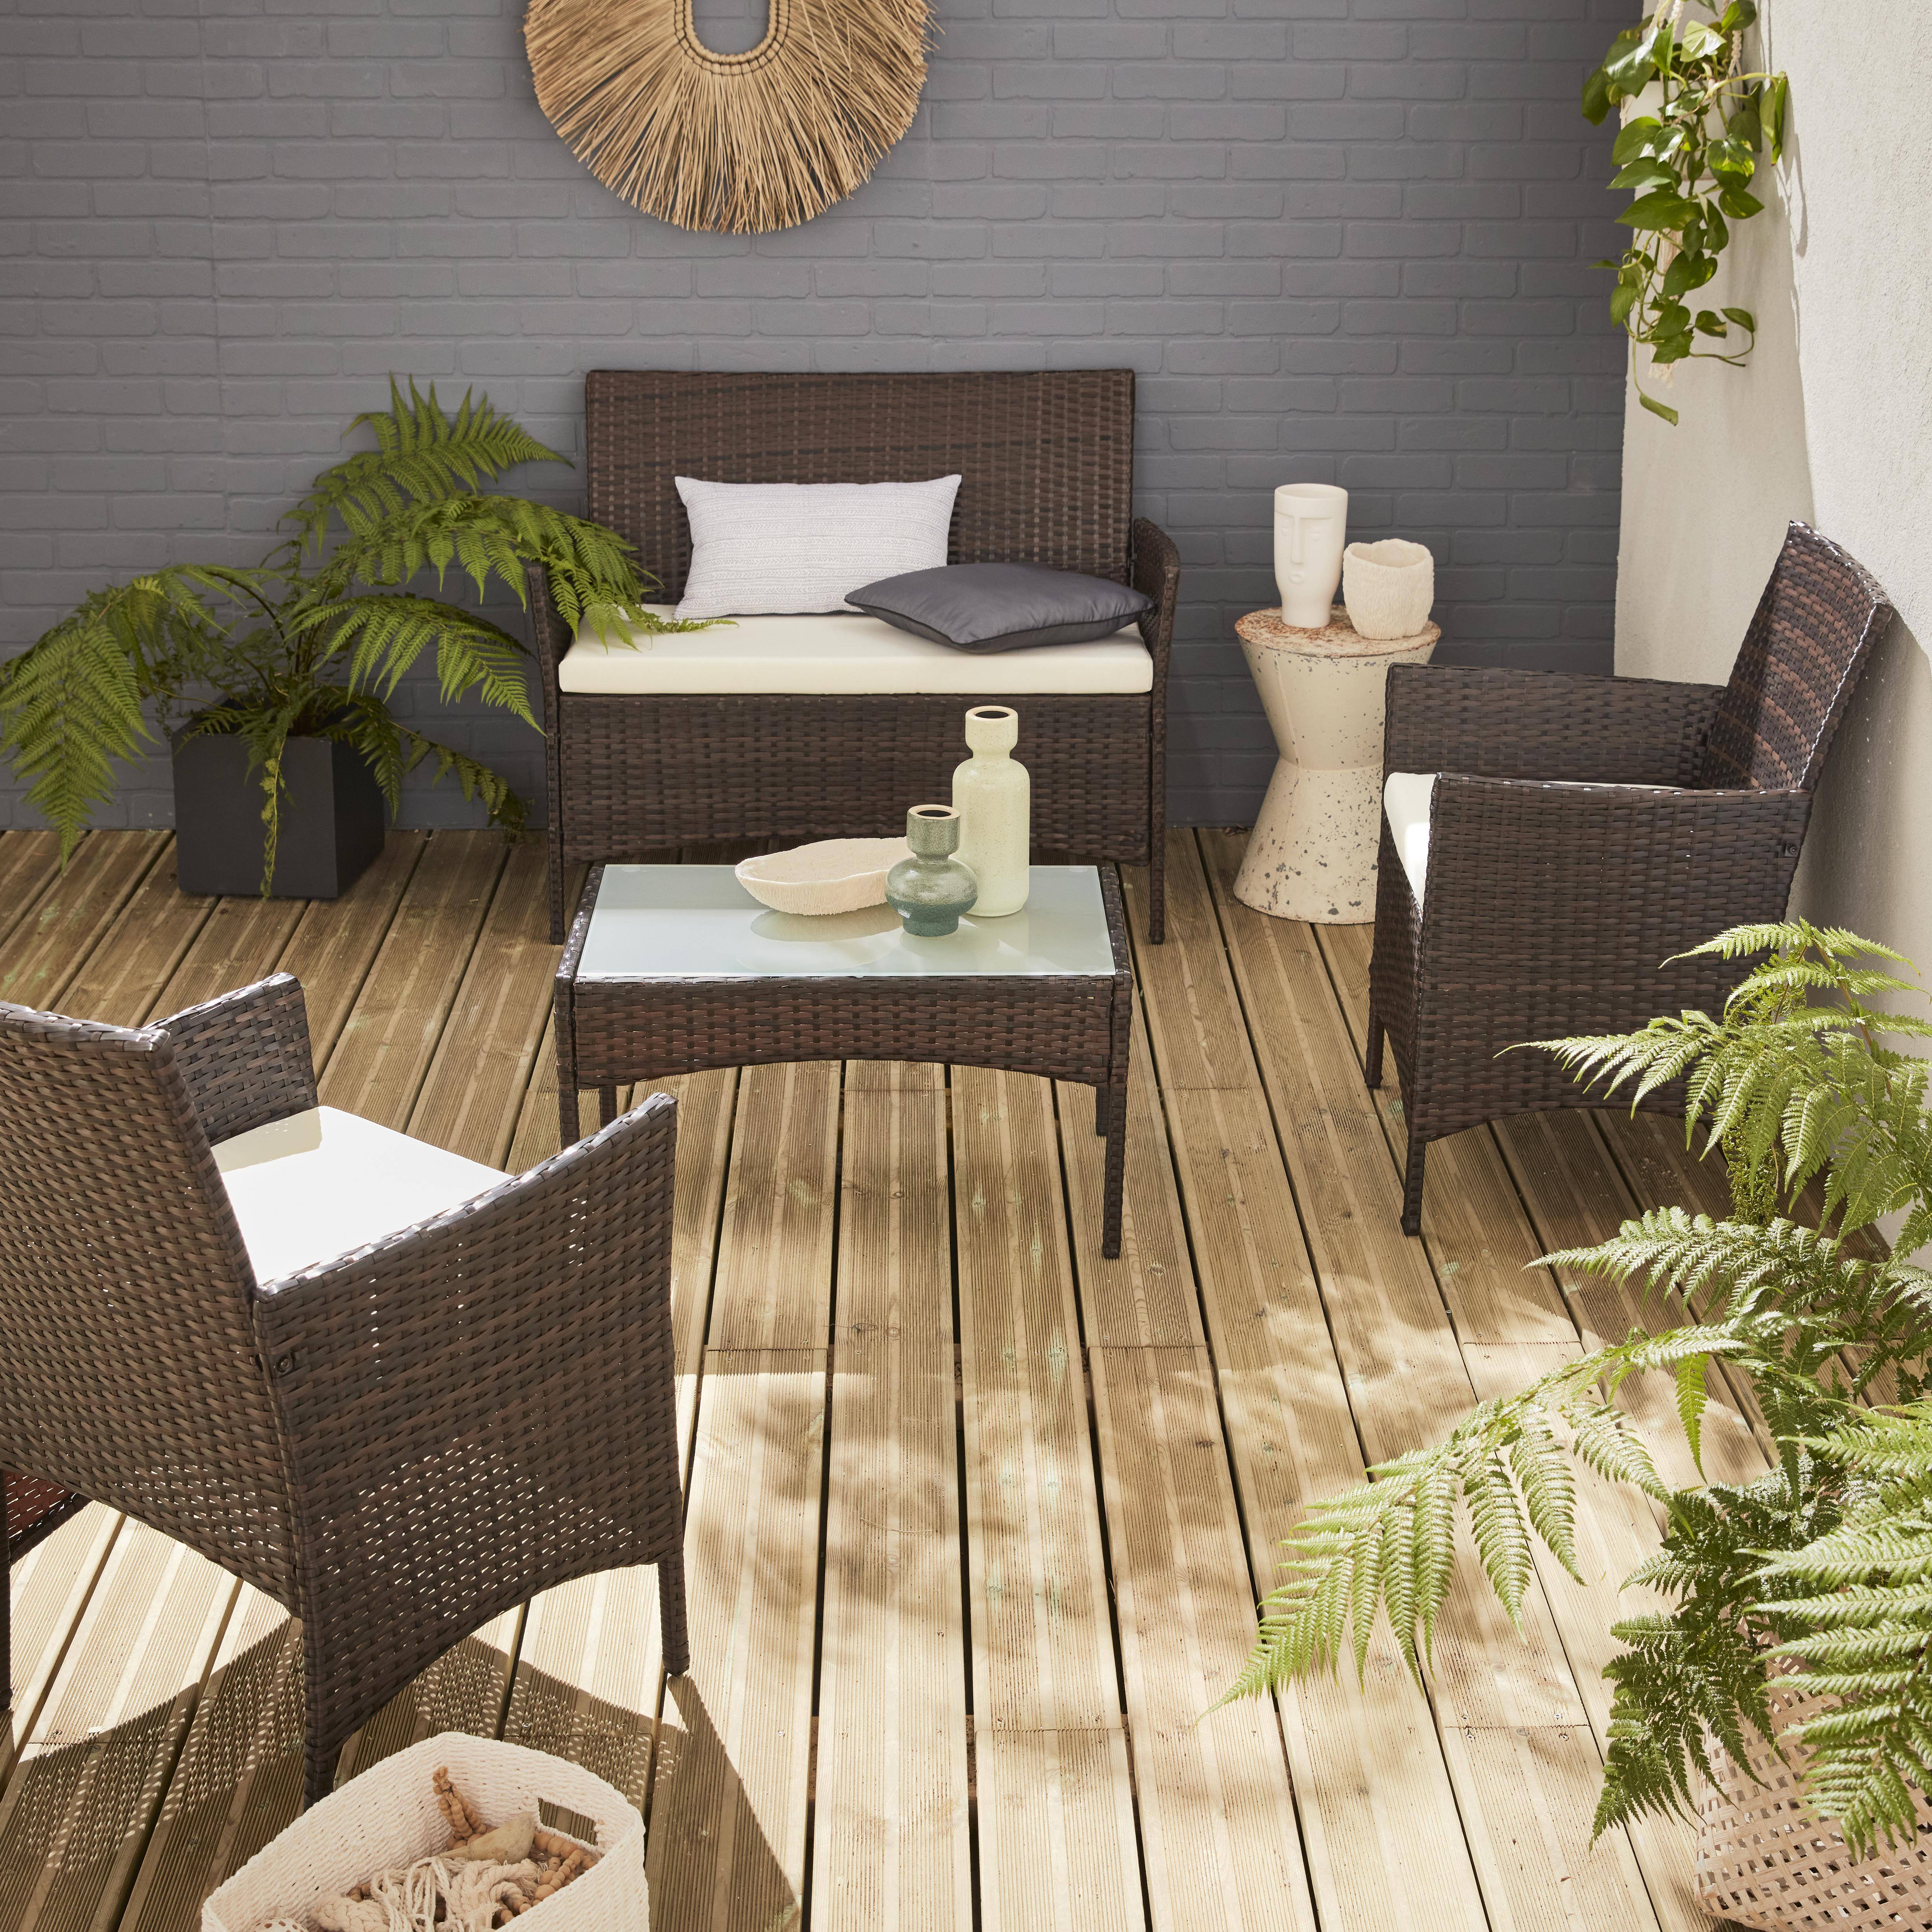 Gartengarnitur aus Polyrattan - Moltès - Schokoladenfarben, Ecrufarbene Kissen - 4 Plätze - 1 Sofa, 2 Sessel, ein Couchtisch Photo1